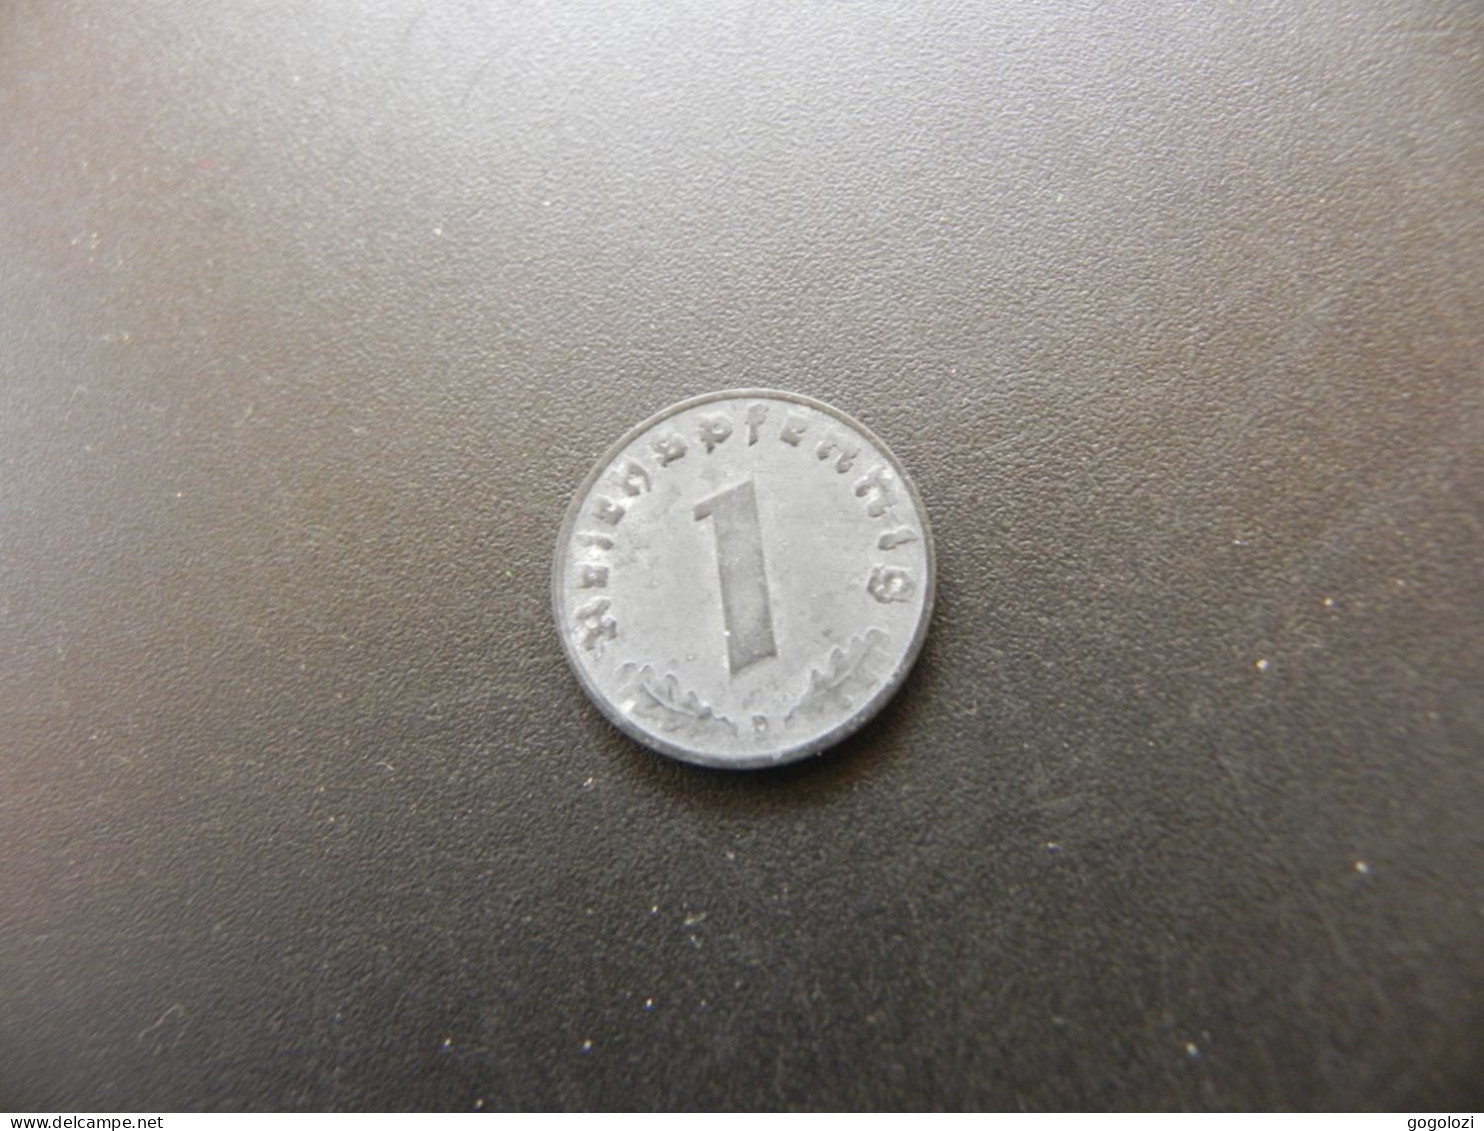 Deutschland 1 Reichspfennig 1943 D - 1 Reichspfennig